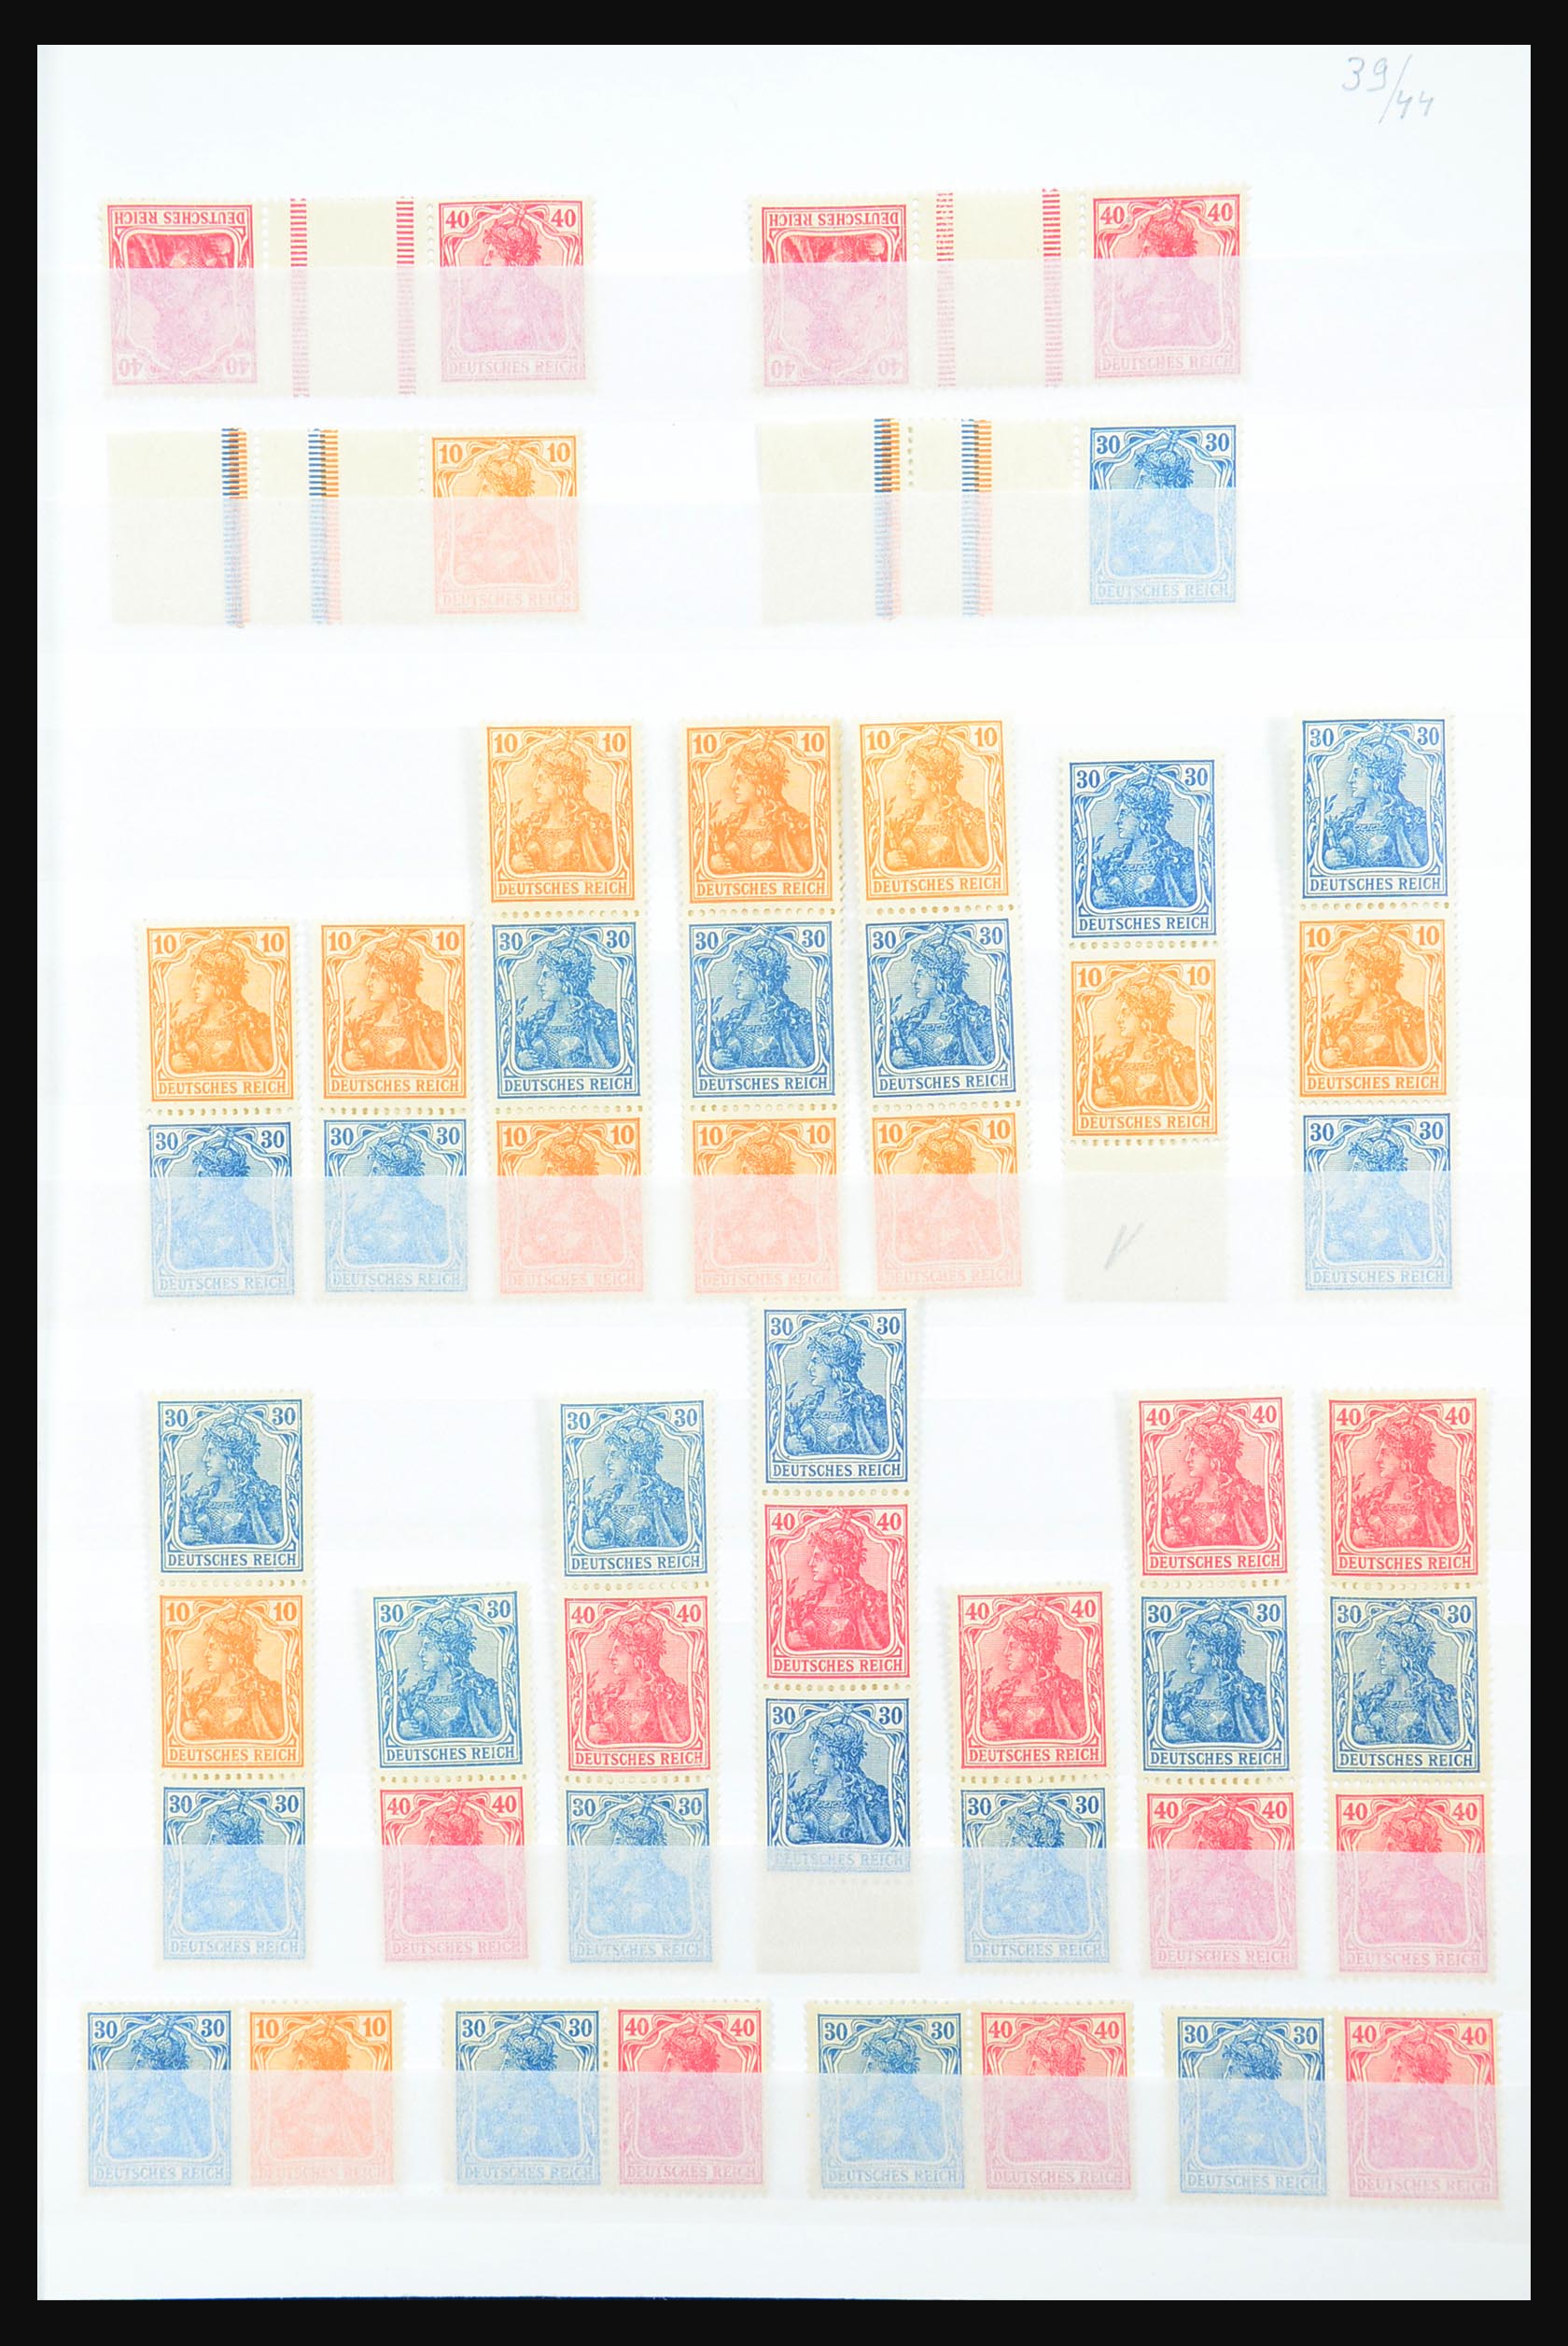 31391 003 - 31391 Duitse Rijk combinaties postfris 1913-1941.